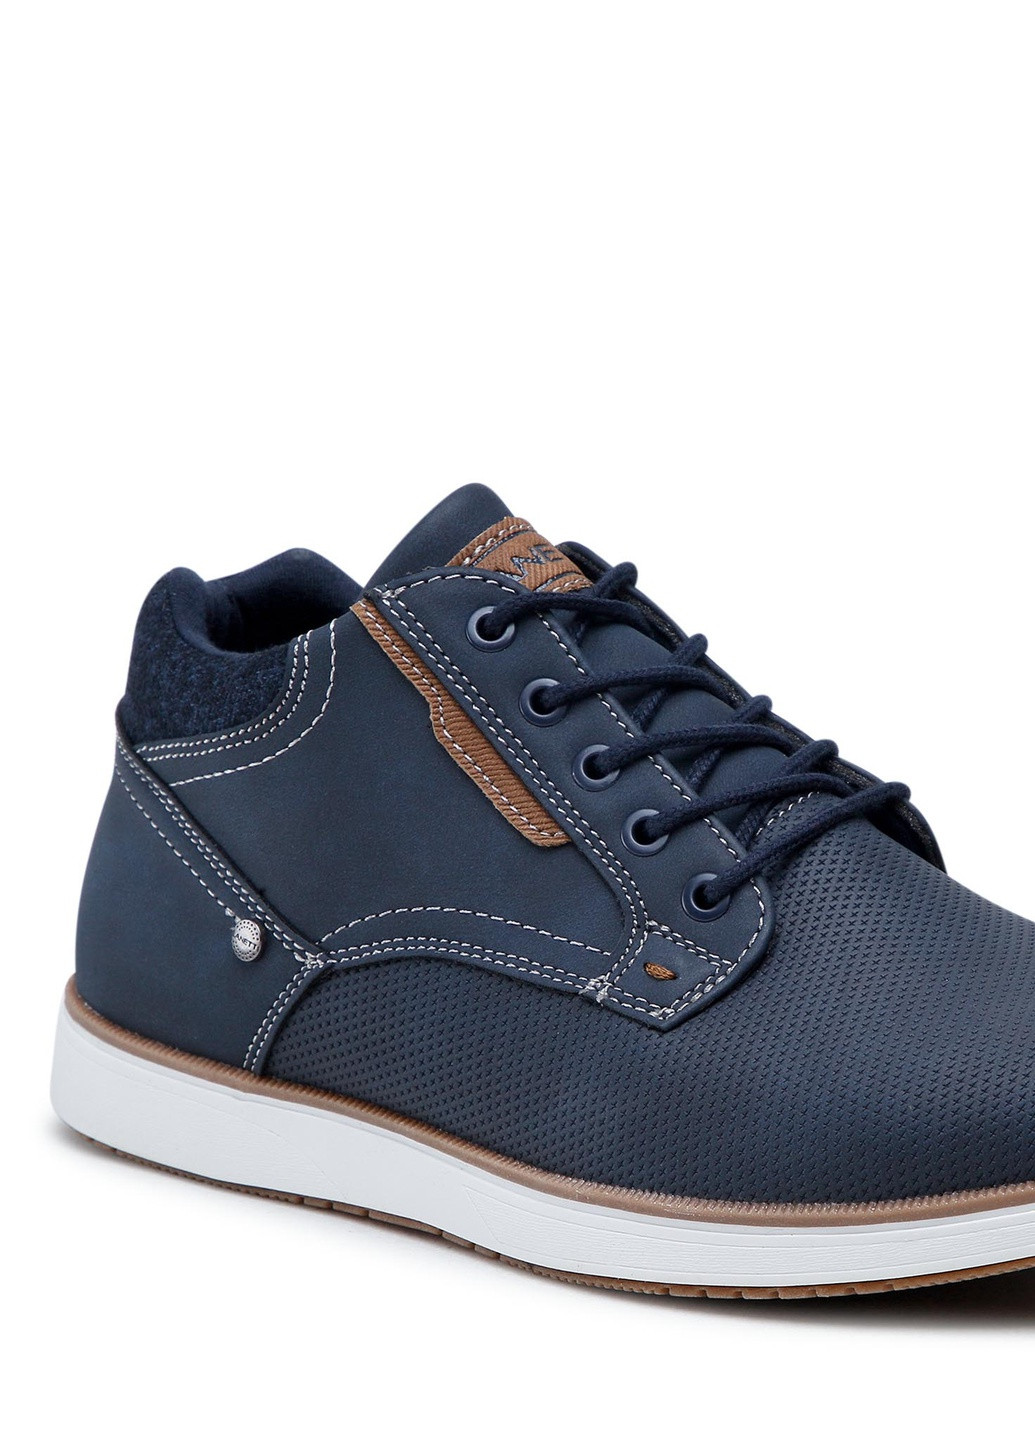 Синие осенние черевики mp07-01473-04 Lanetti